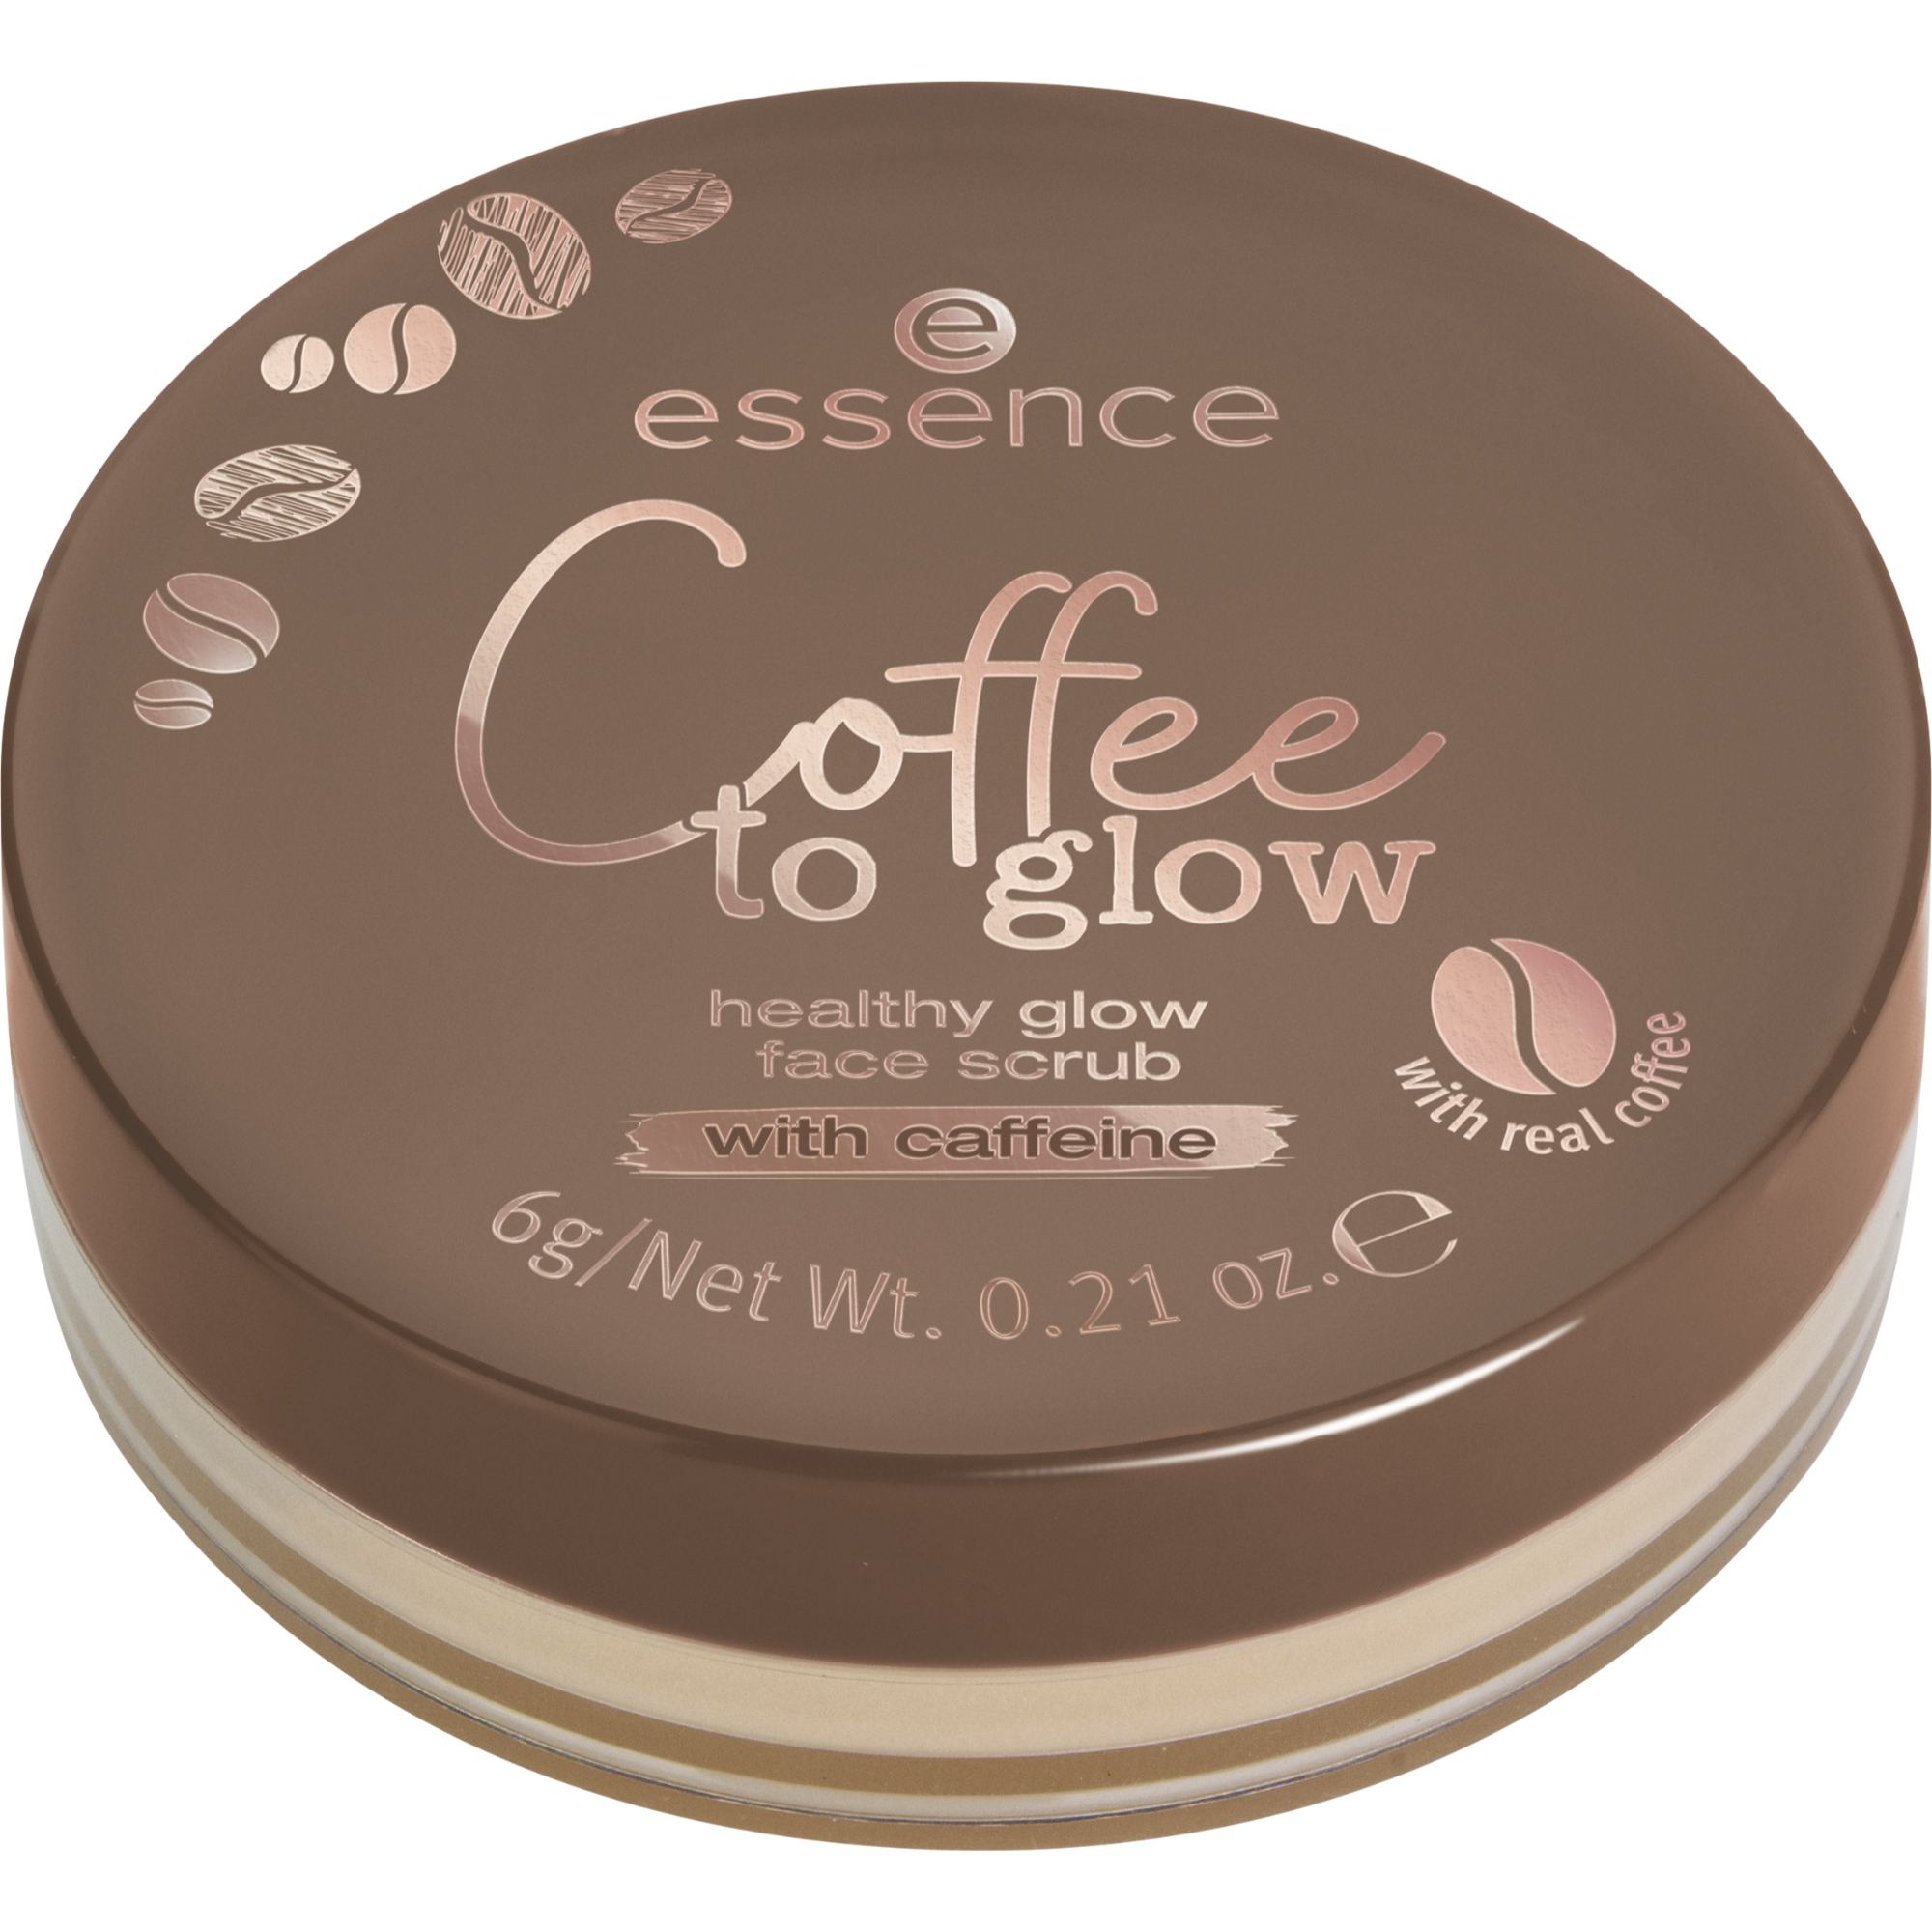 Coffee to glow healthy glow face scrub